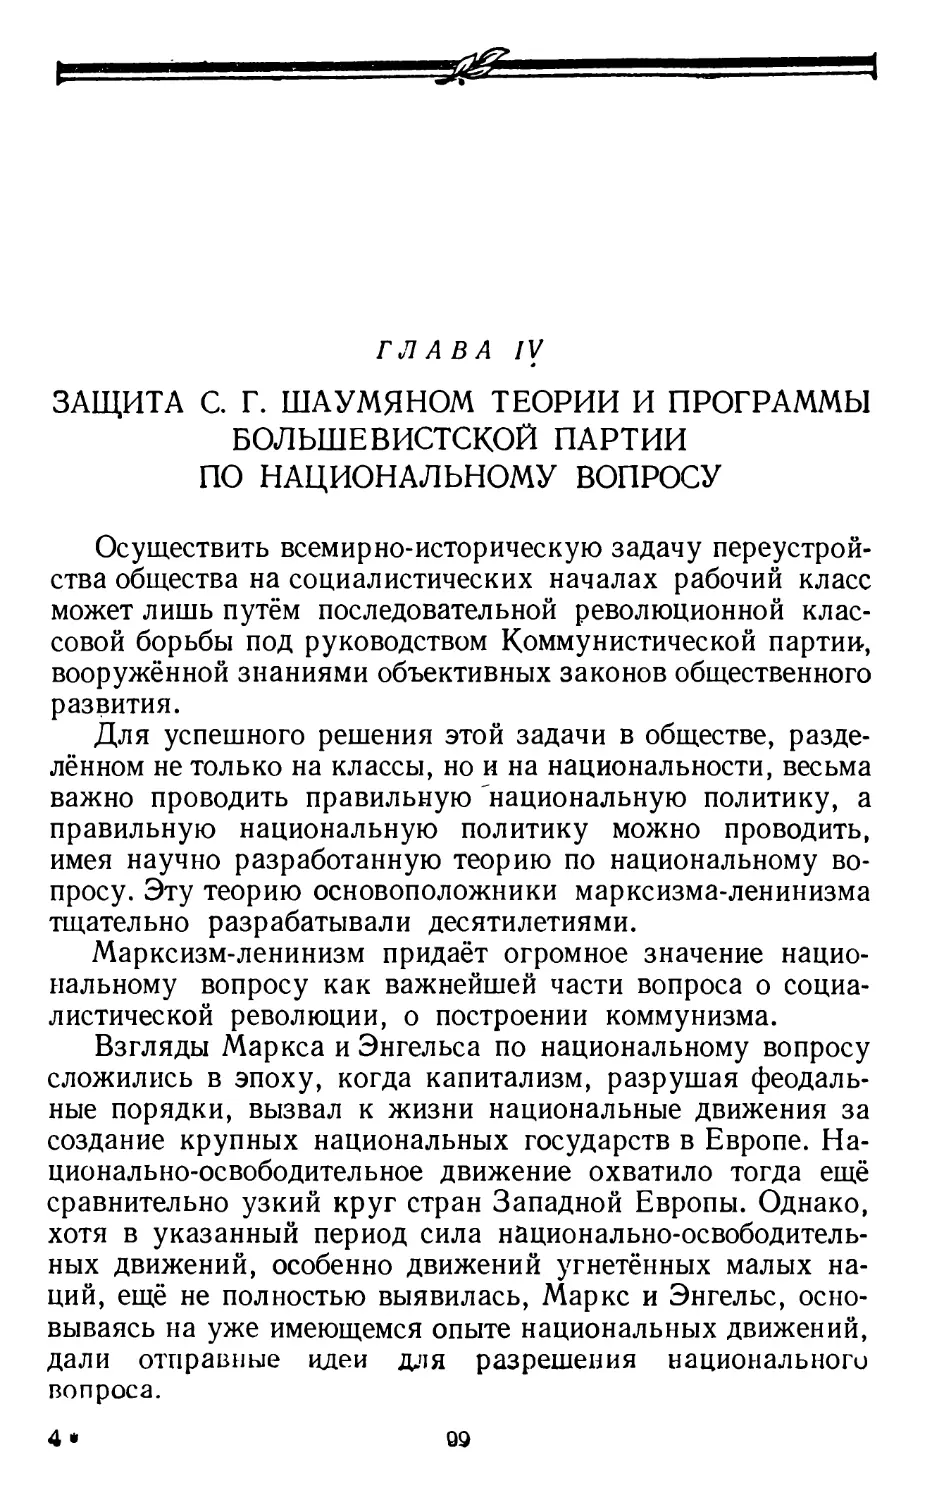 Глава IV. Защита С. Г. Шаумяном теории и программы большевистской партии по национальному вопросу